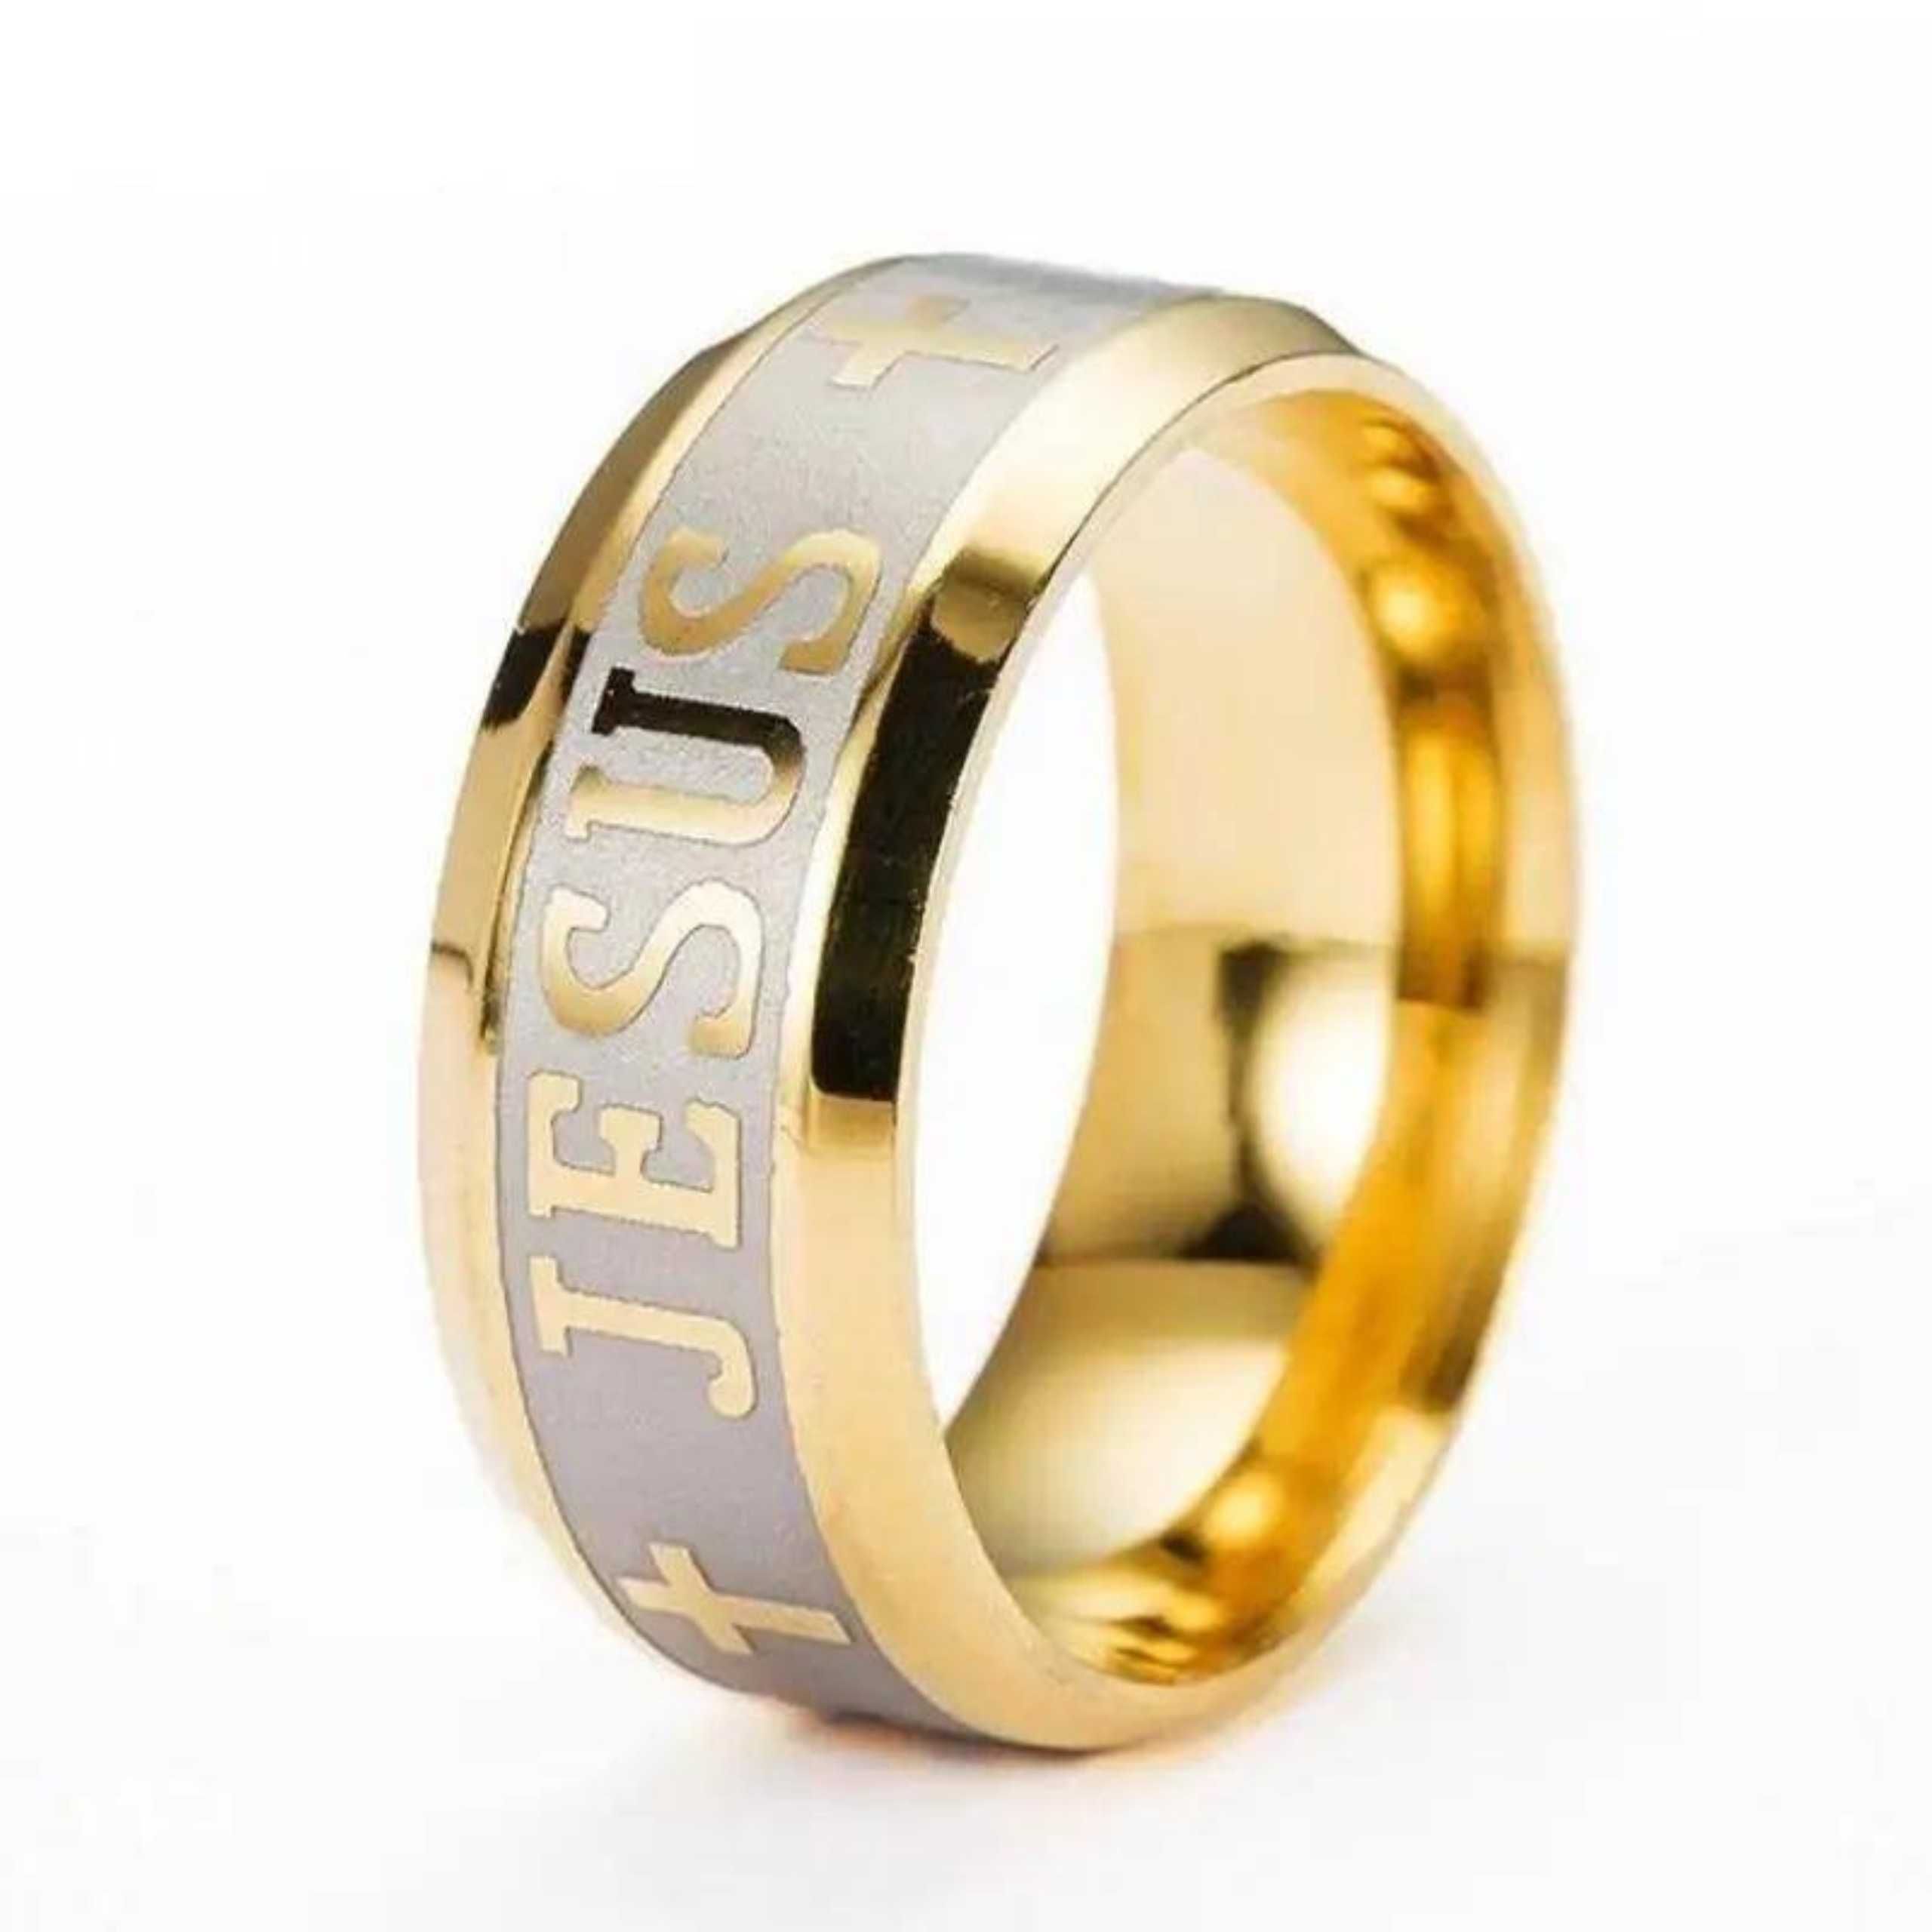 Sygnet stalowy Jezus wiara chrześcijaństwo pierścionek katolicki złoty